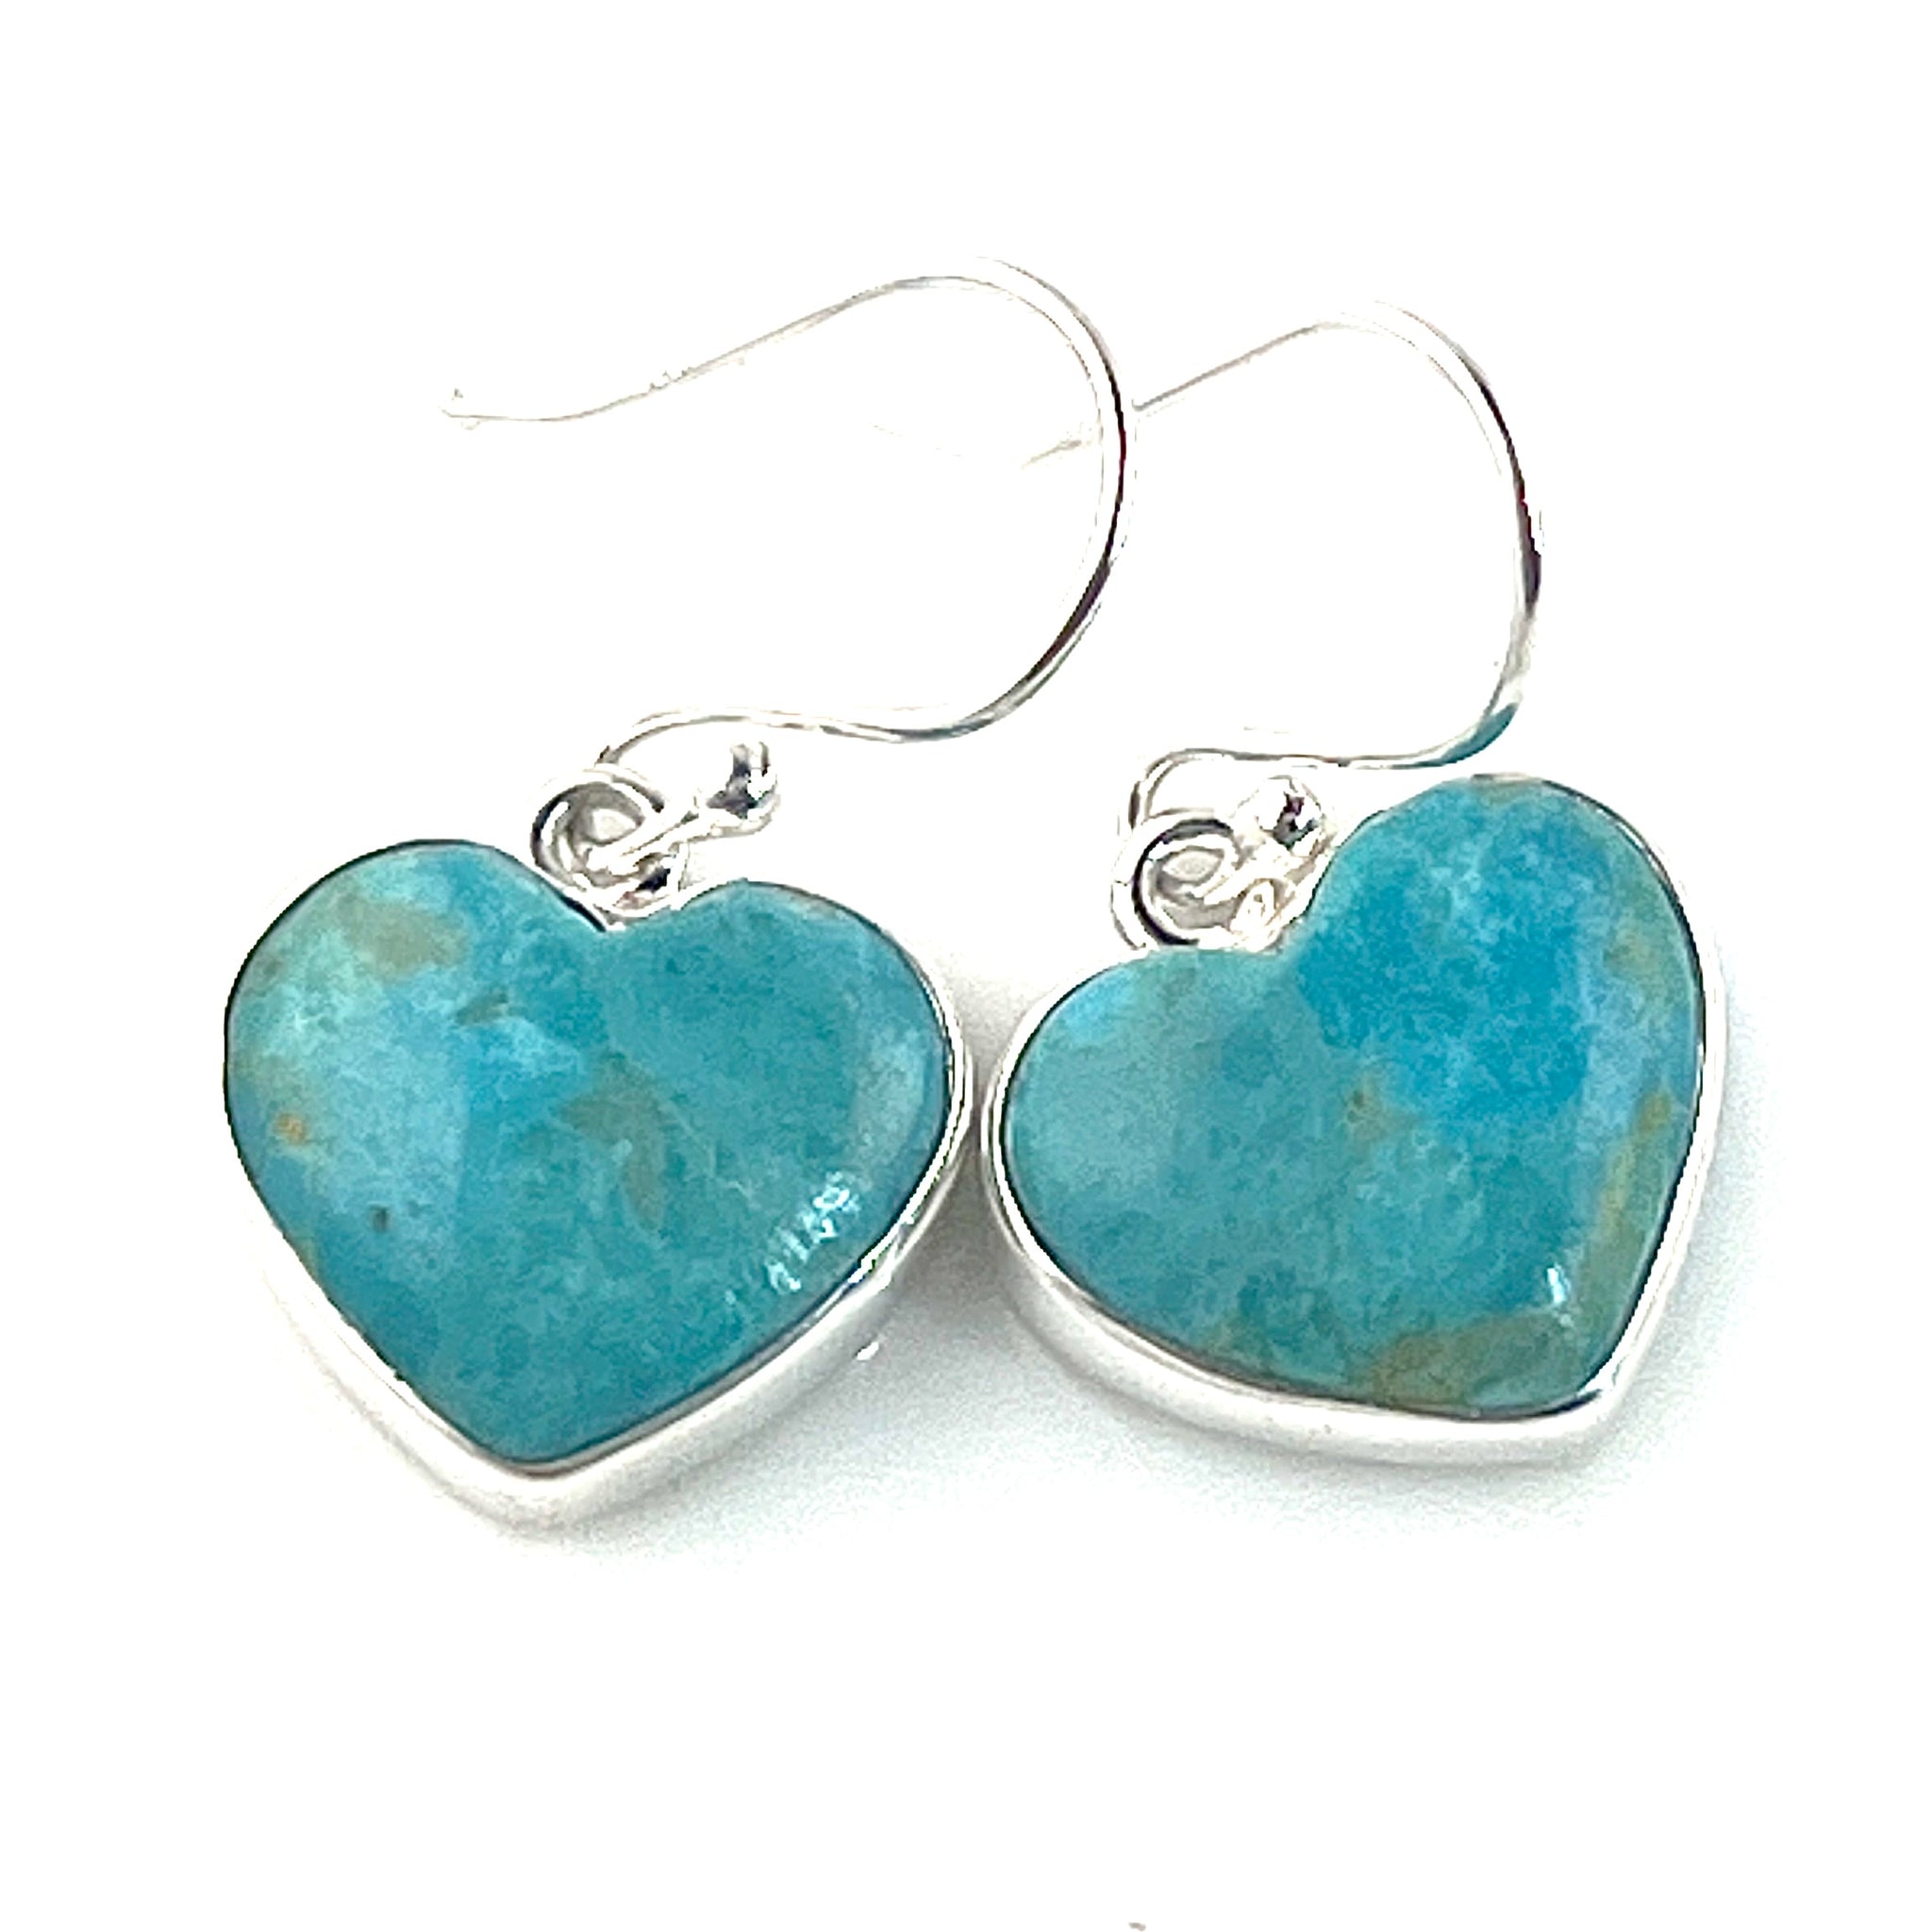 Blue Turquoise Sterling Silver Heart Earrings - Keja Designs Jewelry